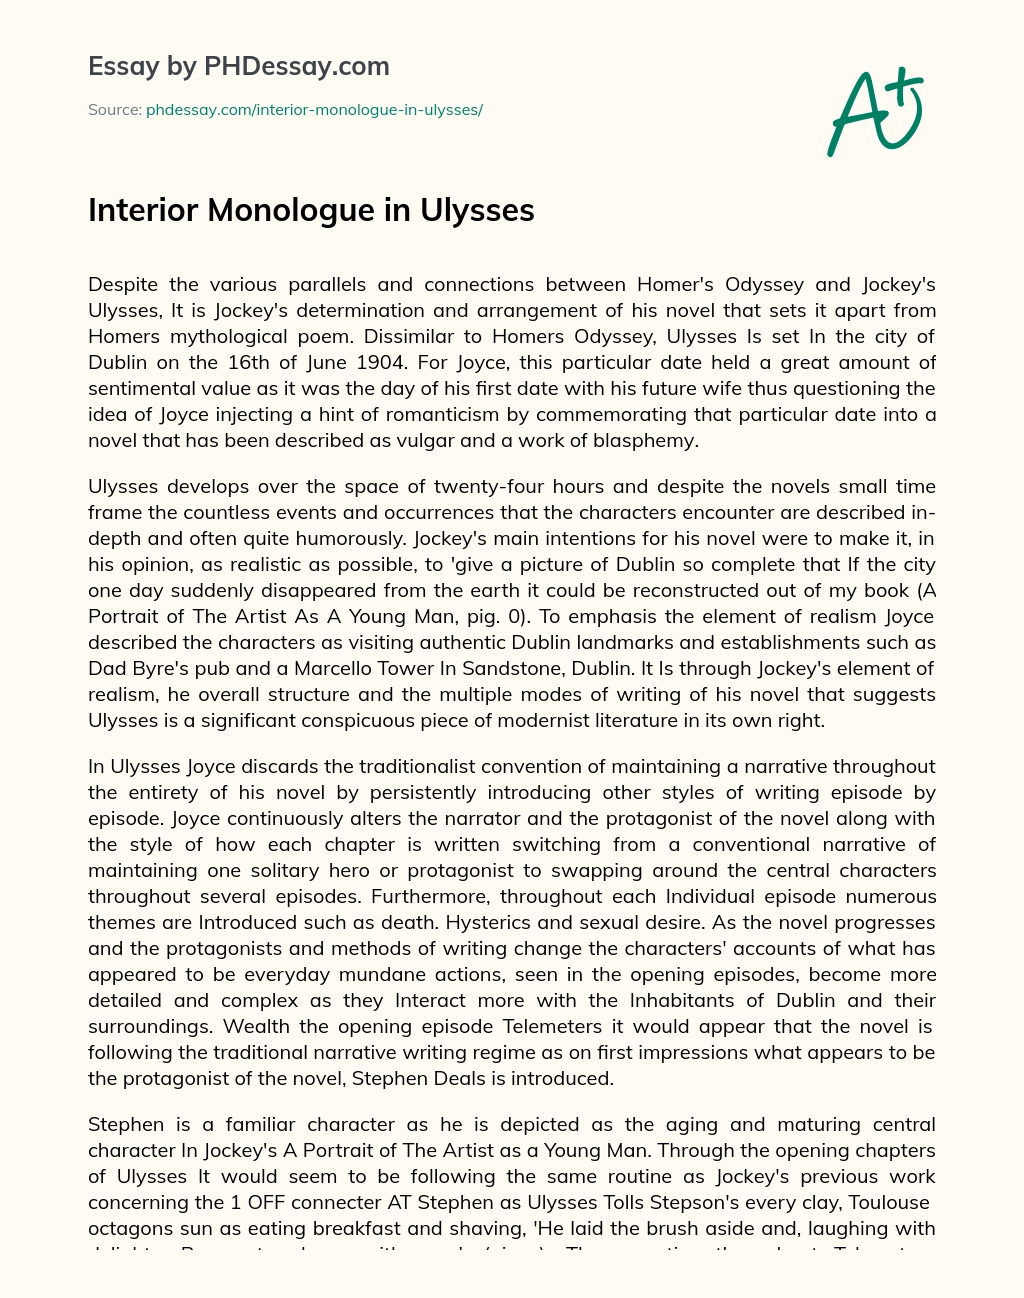 Interior Monologue in Ulysses essay